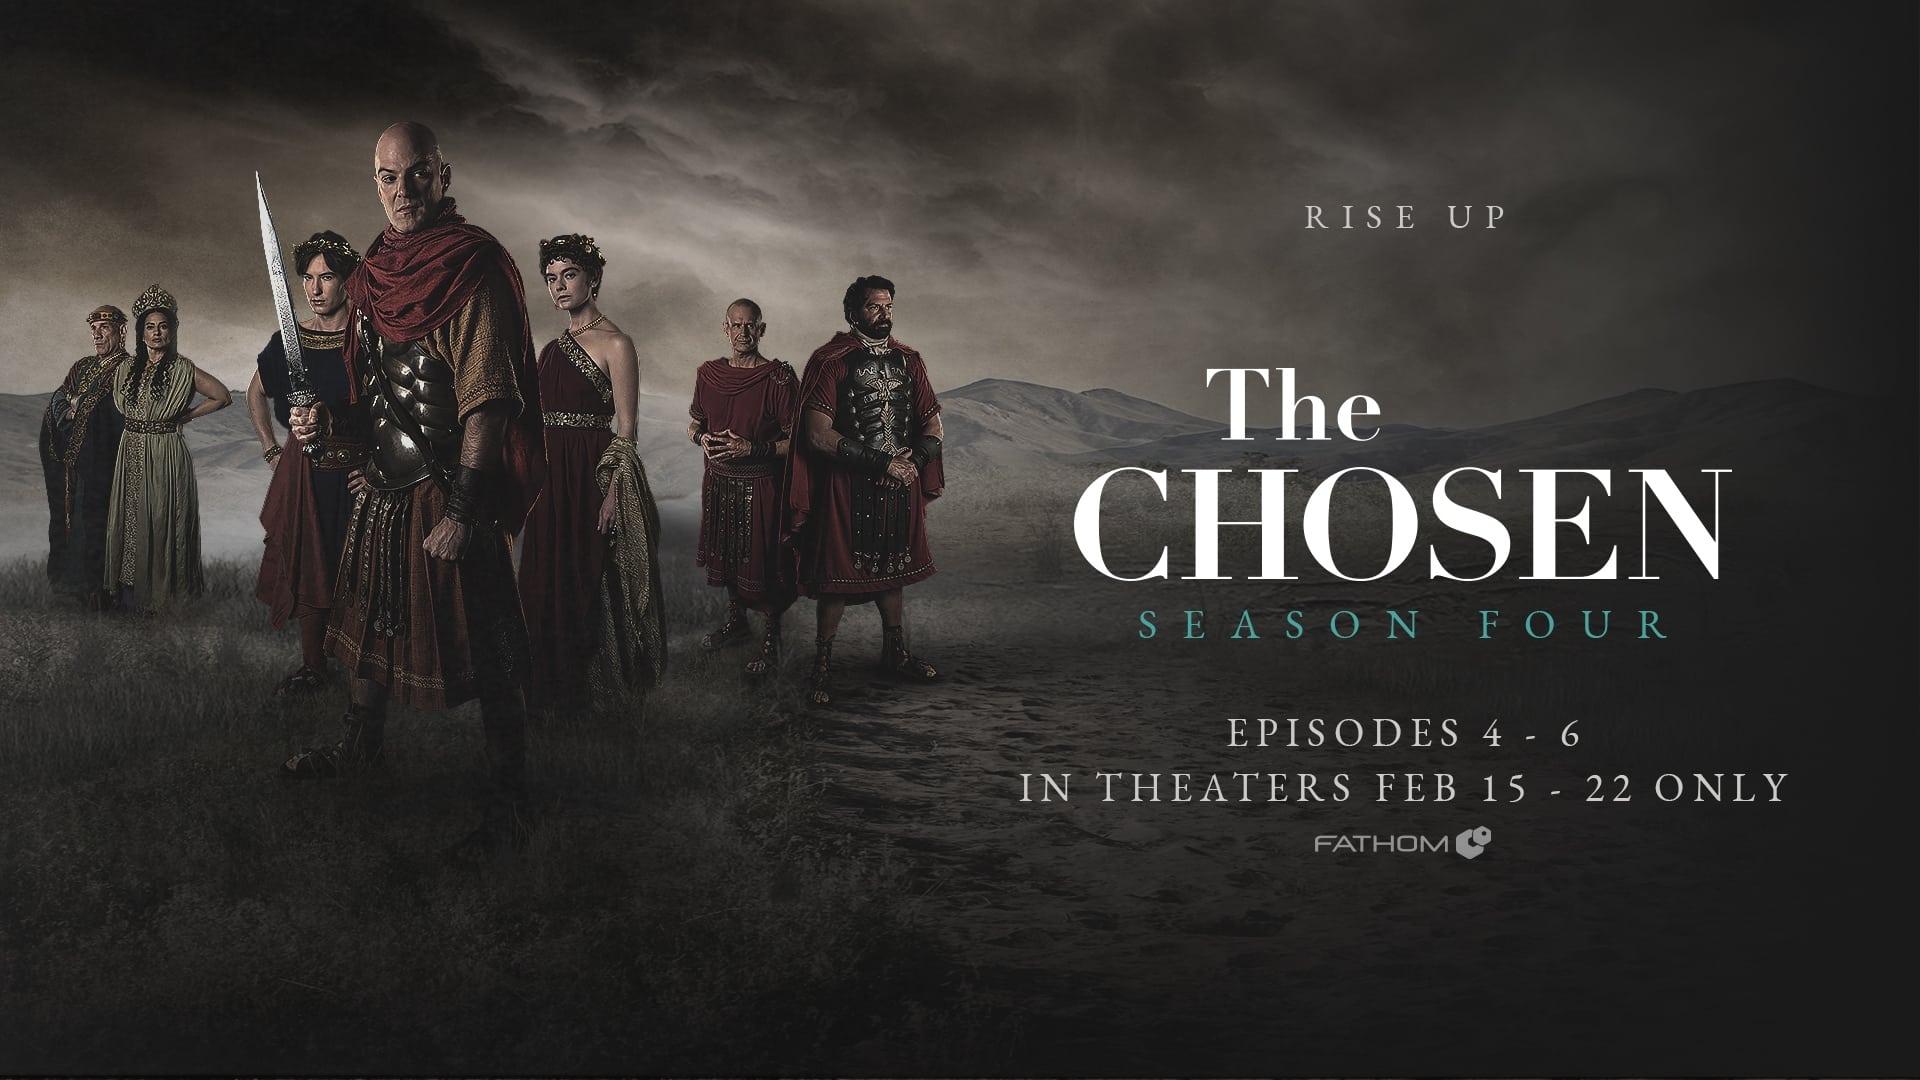 The Chosen Season 4 Episodes 4-6 backdrop